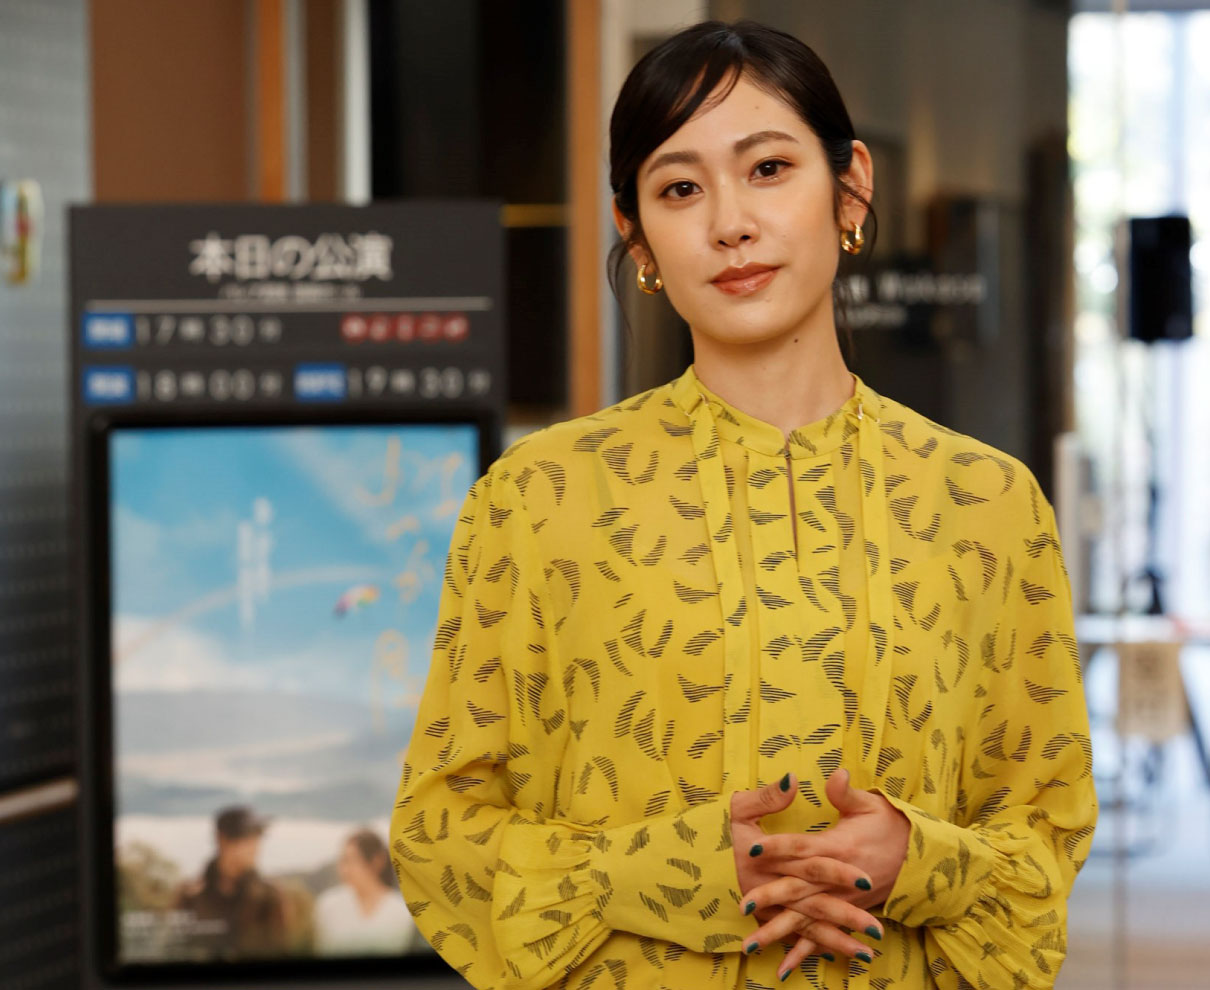 「すっかり福井のファンに」と女優・阿部純子さん。短編映画「虹が開く」で主演、撮影と役作りを語る。